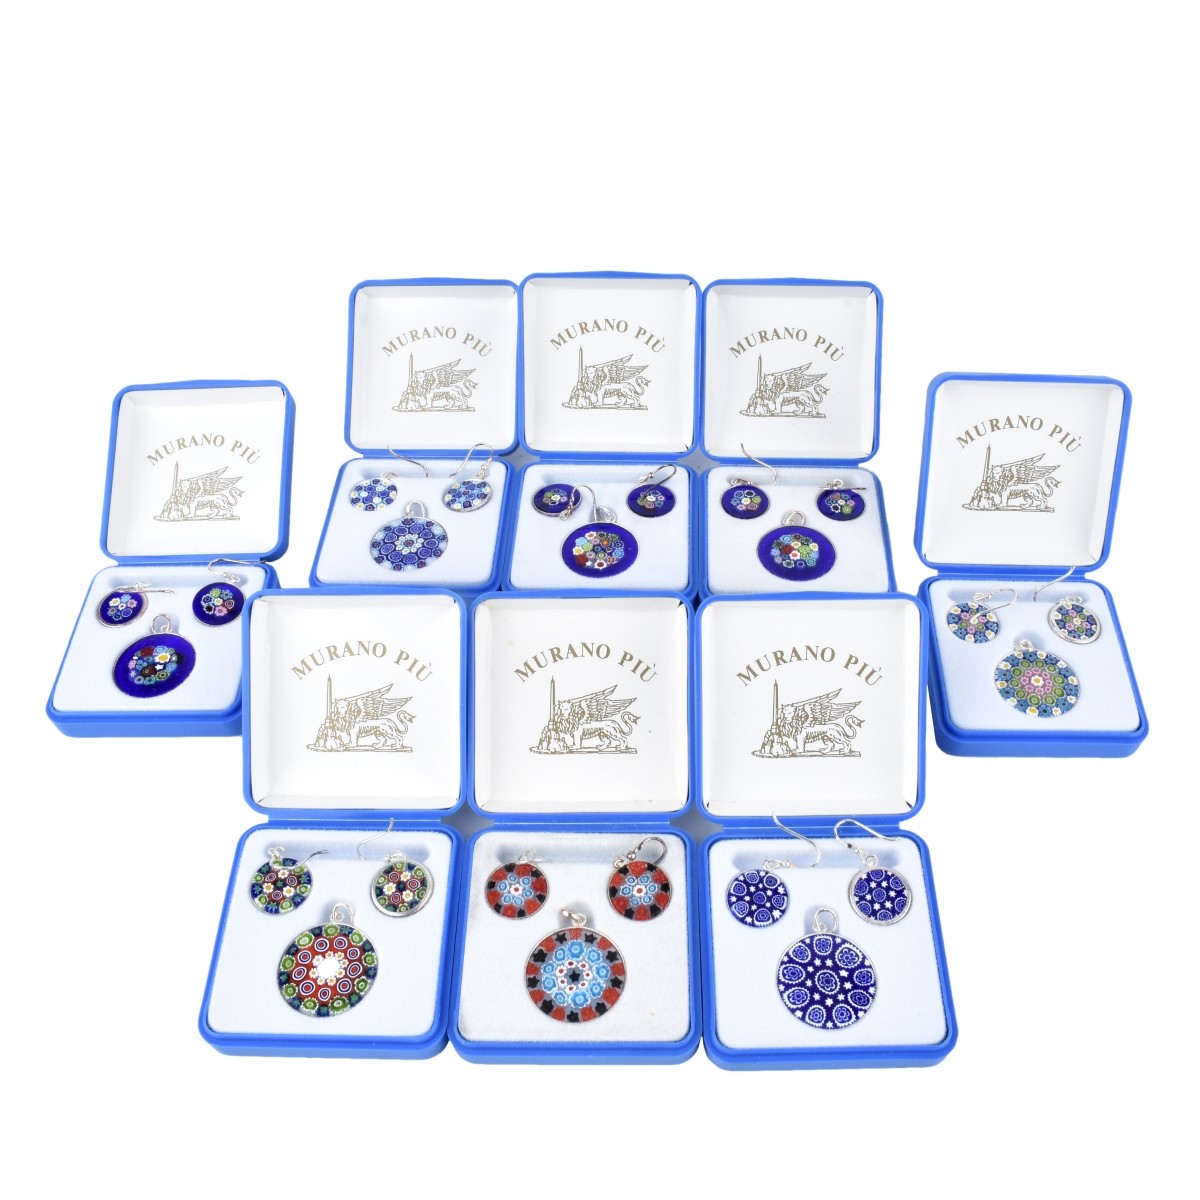 8 Murano Jewelry Sets